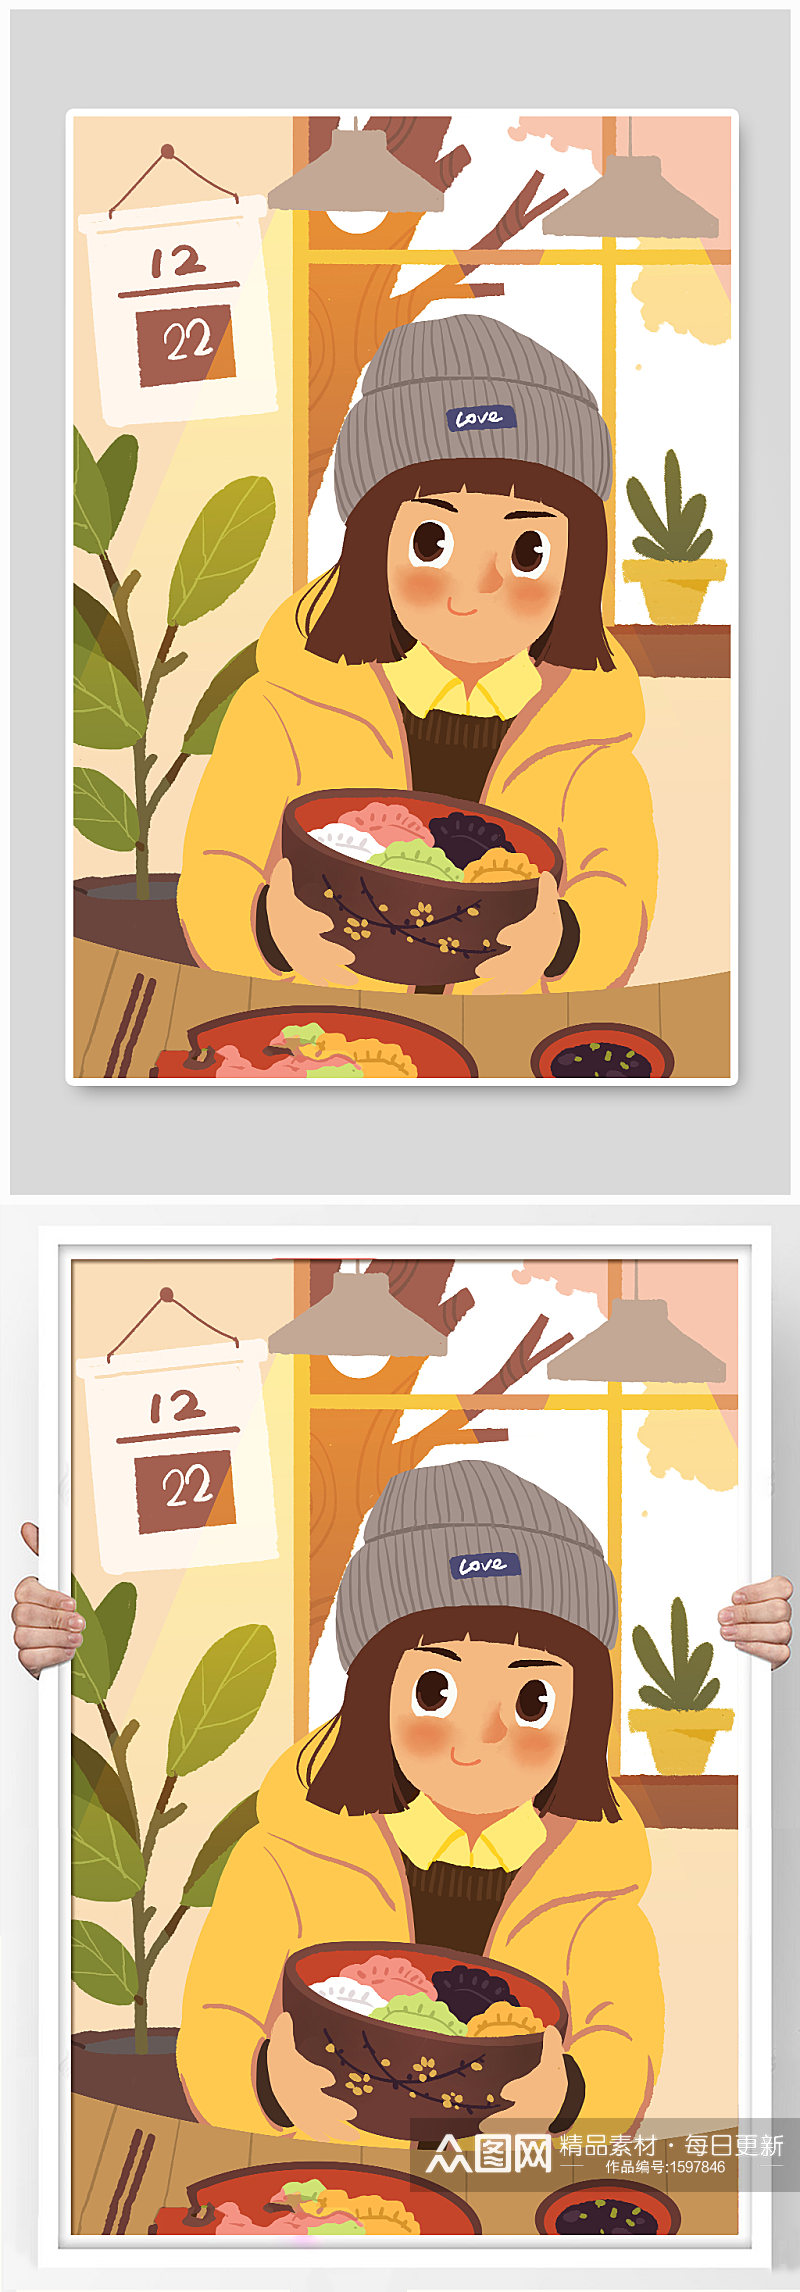 冬至美食饺子插画素材